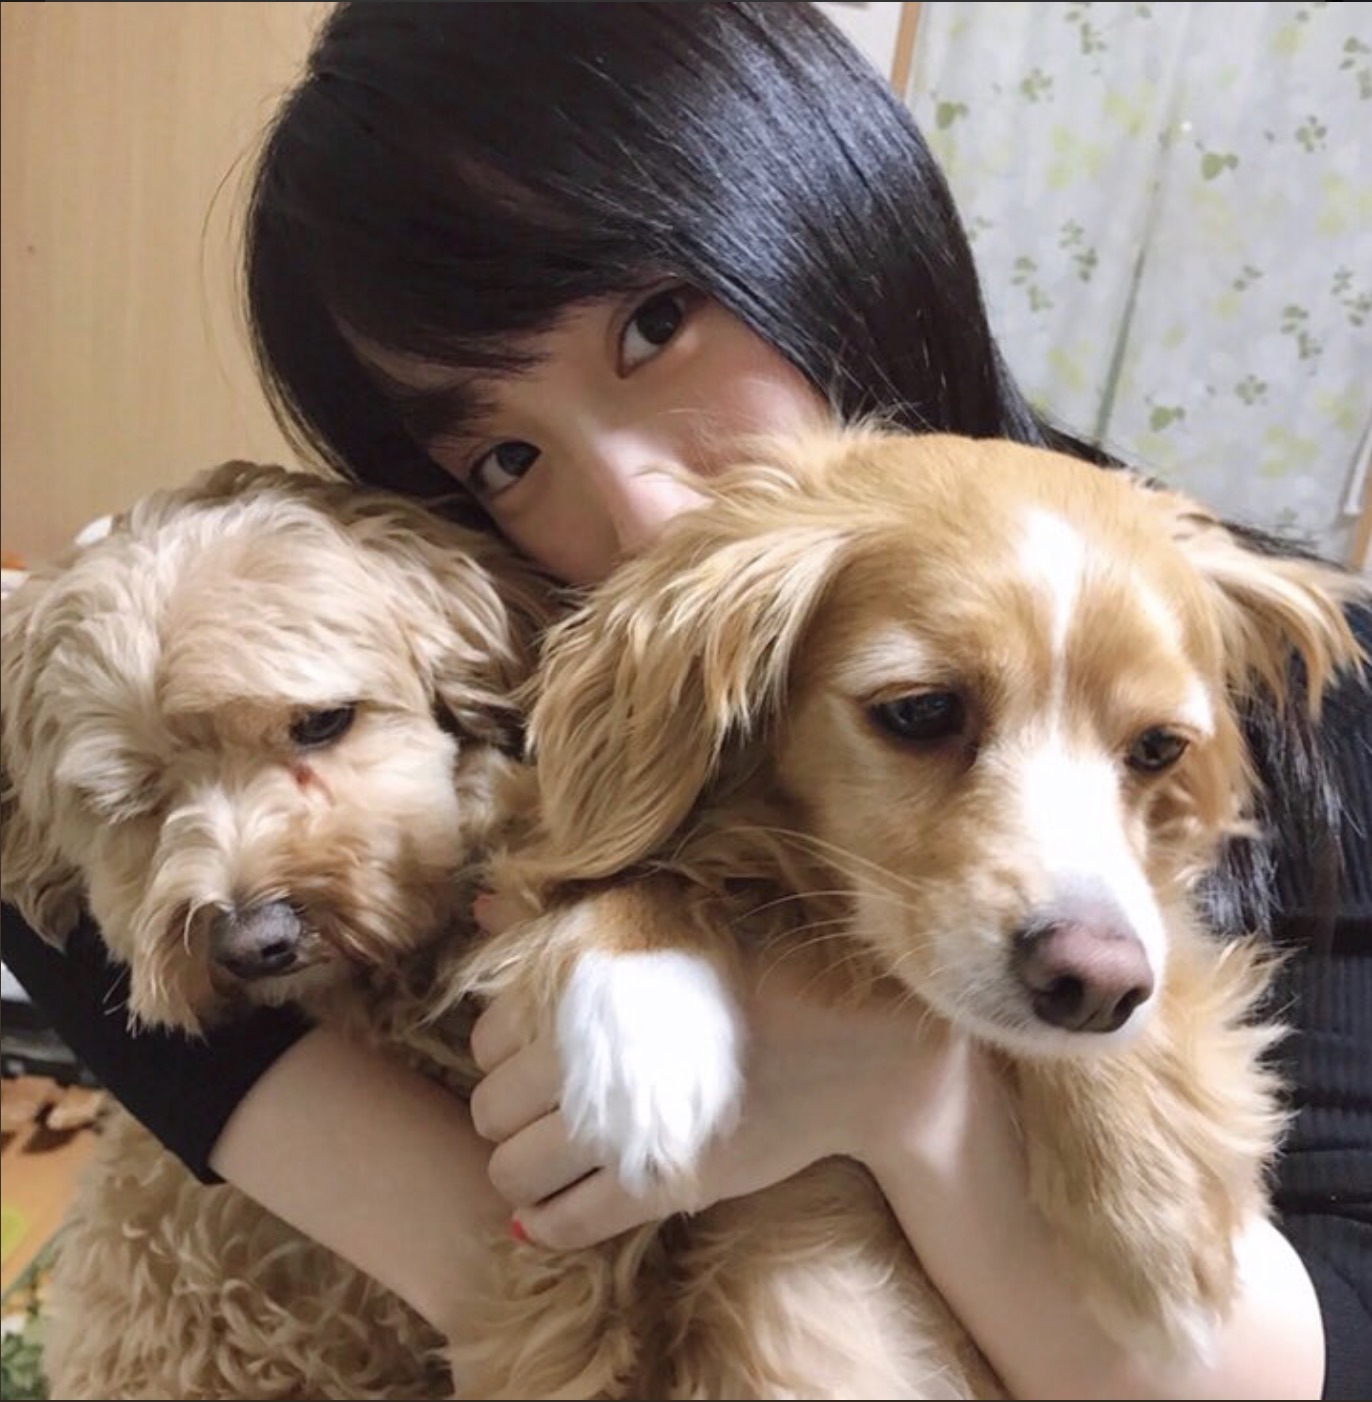 川栄李奈 愛犬との写真がかわいすぎると話題 犬になりたい の声も Rbb Today